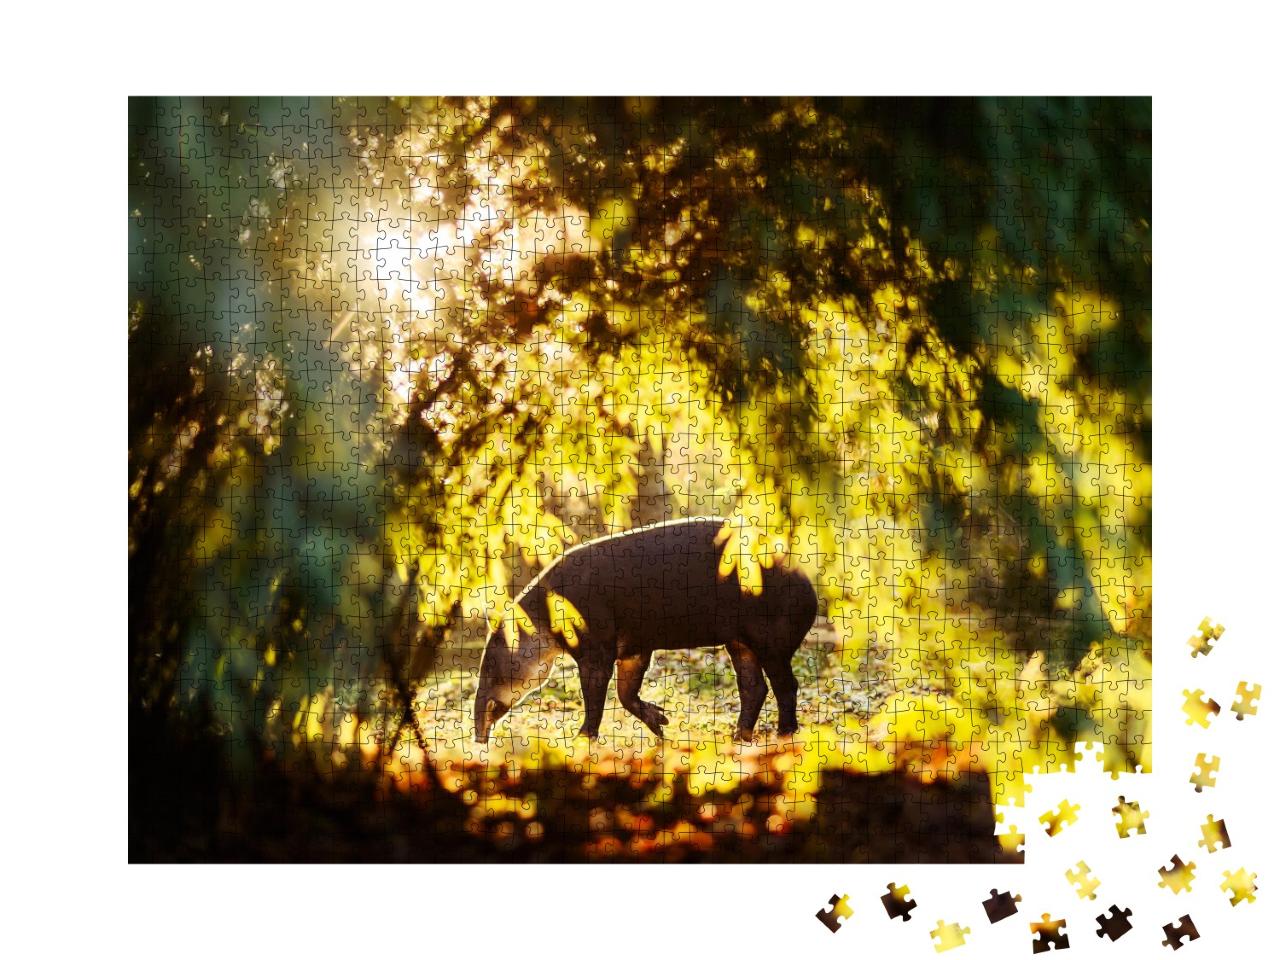 Puzzle de 1000 pièces « Tapir au soleil dans la forêt d'un zoo »